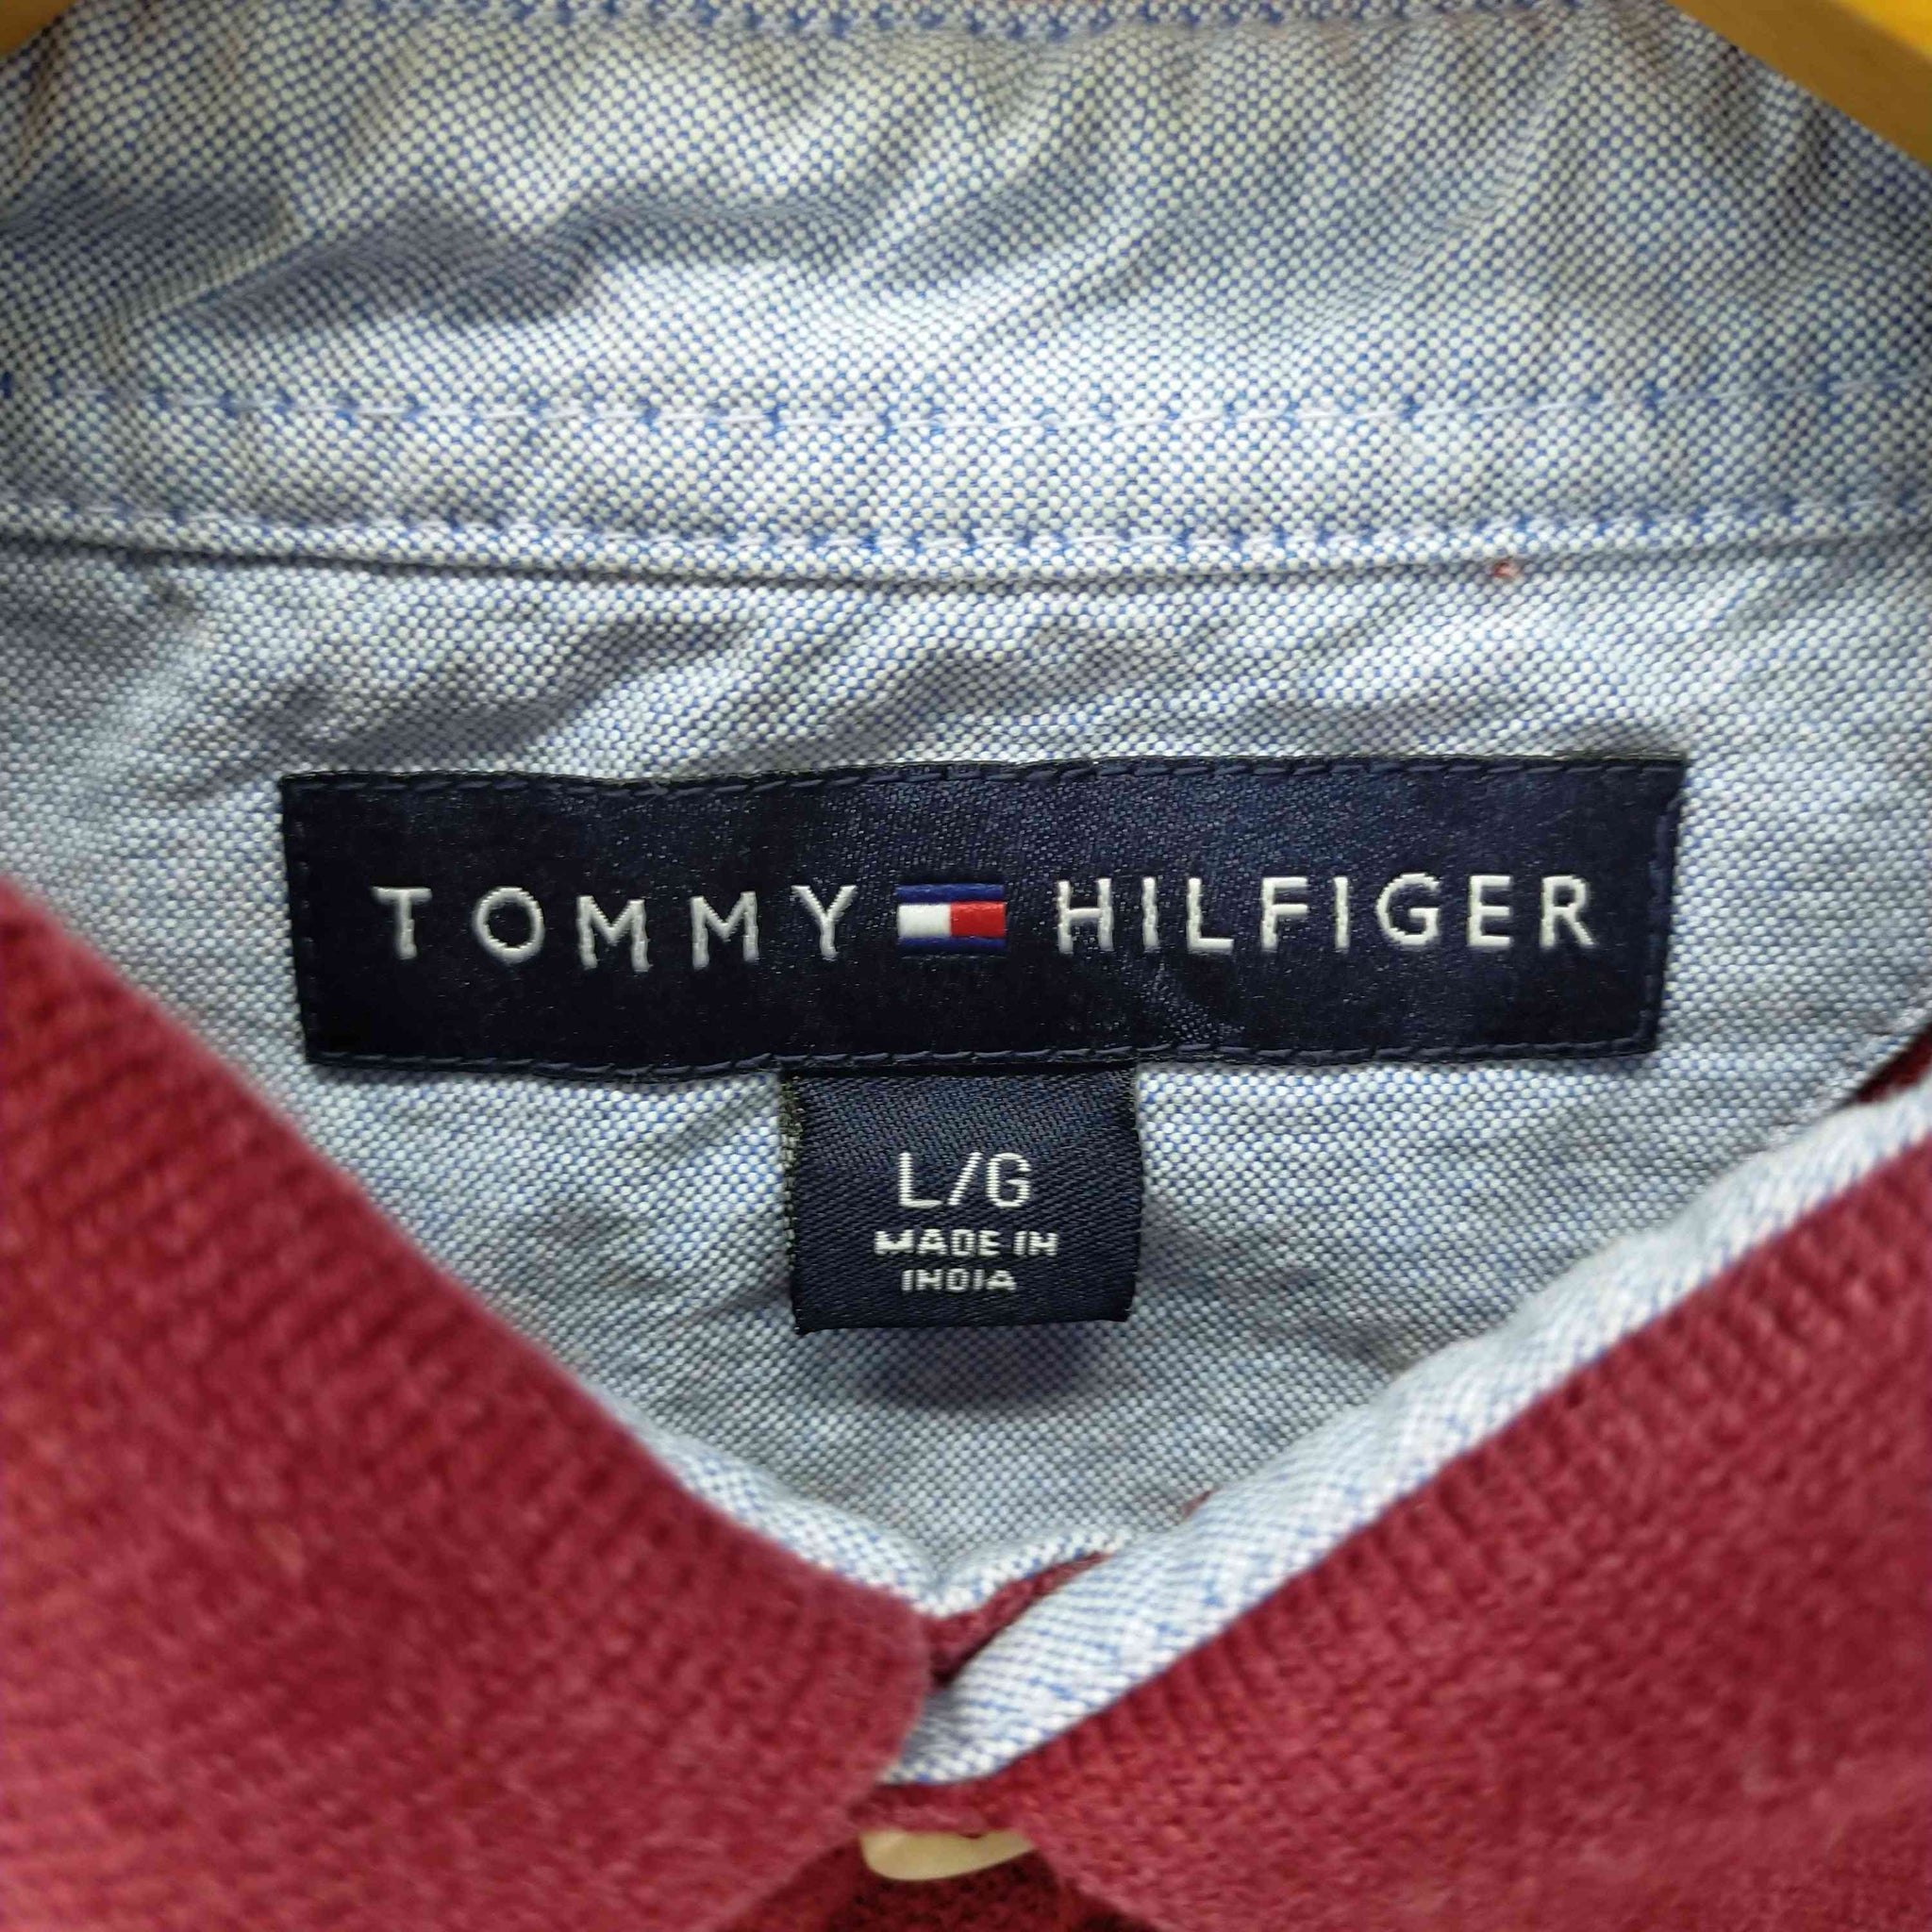 TOMMY HILFIGER(トミーヒルフィガー)L/S ポロシャツ